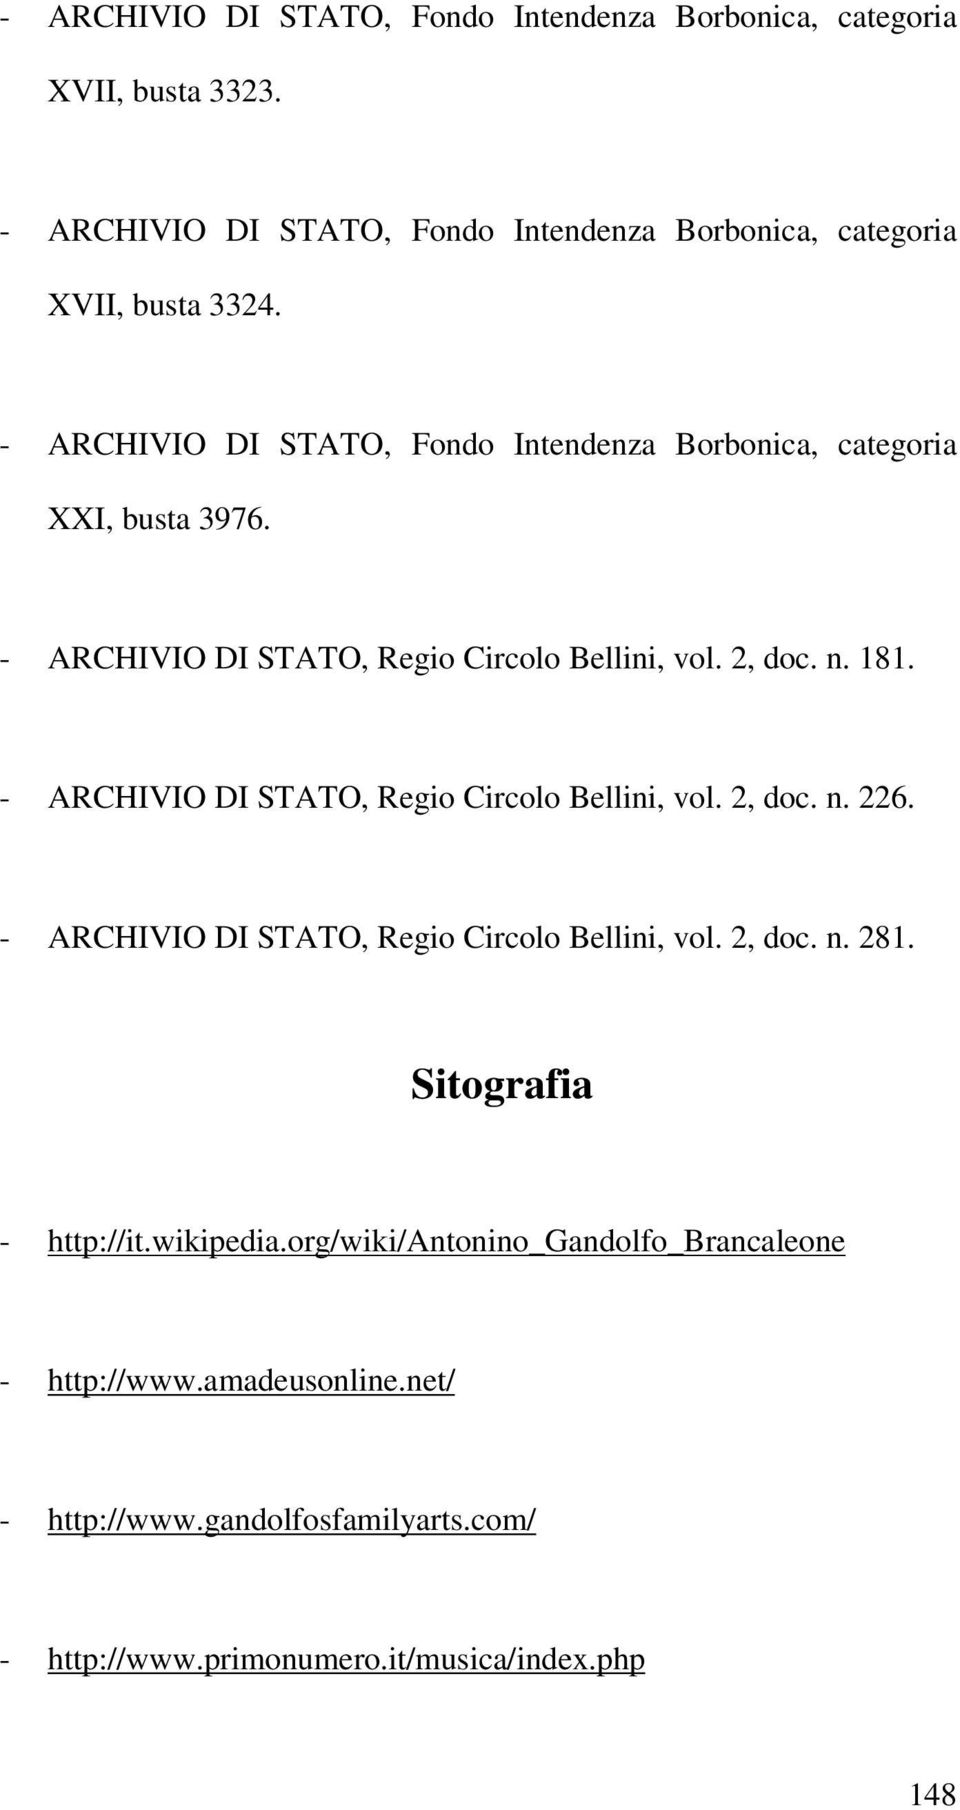 - ARCHIVIO DI STATO, Regio Circolo Bellini, vol. 2, doc. n. 226. - ARCHIVIO DI STATO, Regio Circolo Bellini, vol. 2, doc. n. 281. Sitografia - http://it.